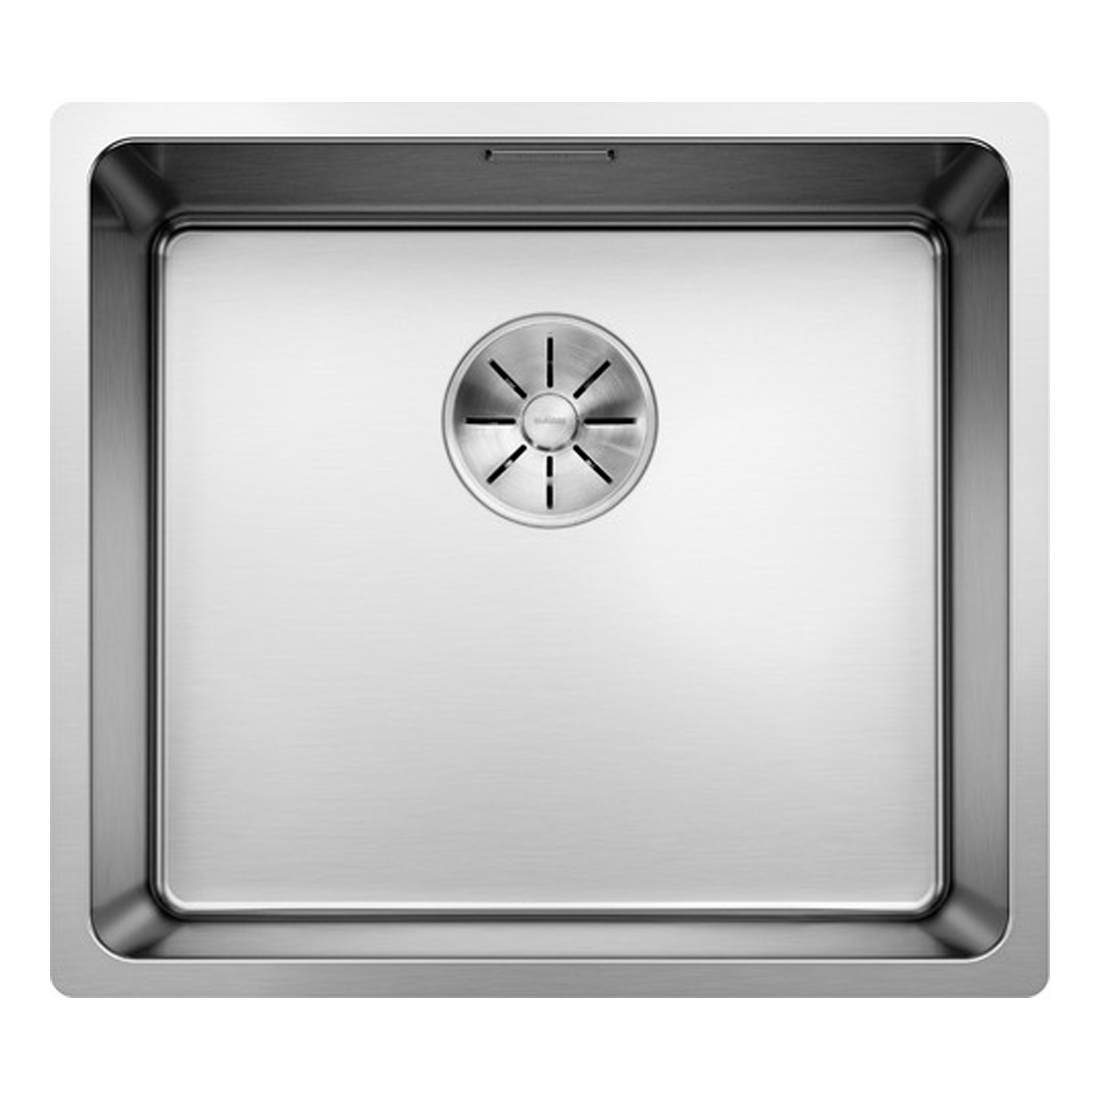 Кухонная мойка Blanco Andano 450-U полированная сталь кухонная мойка blanco claron 700 if a зеркальная полировка